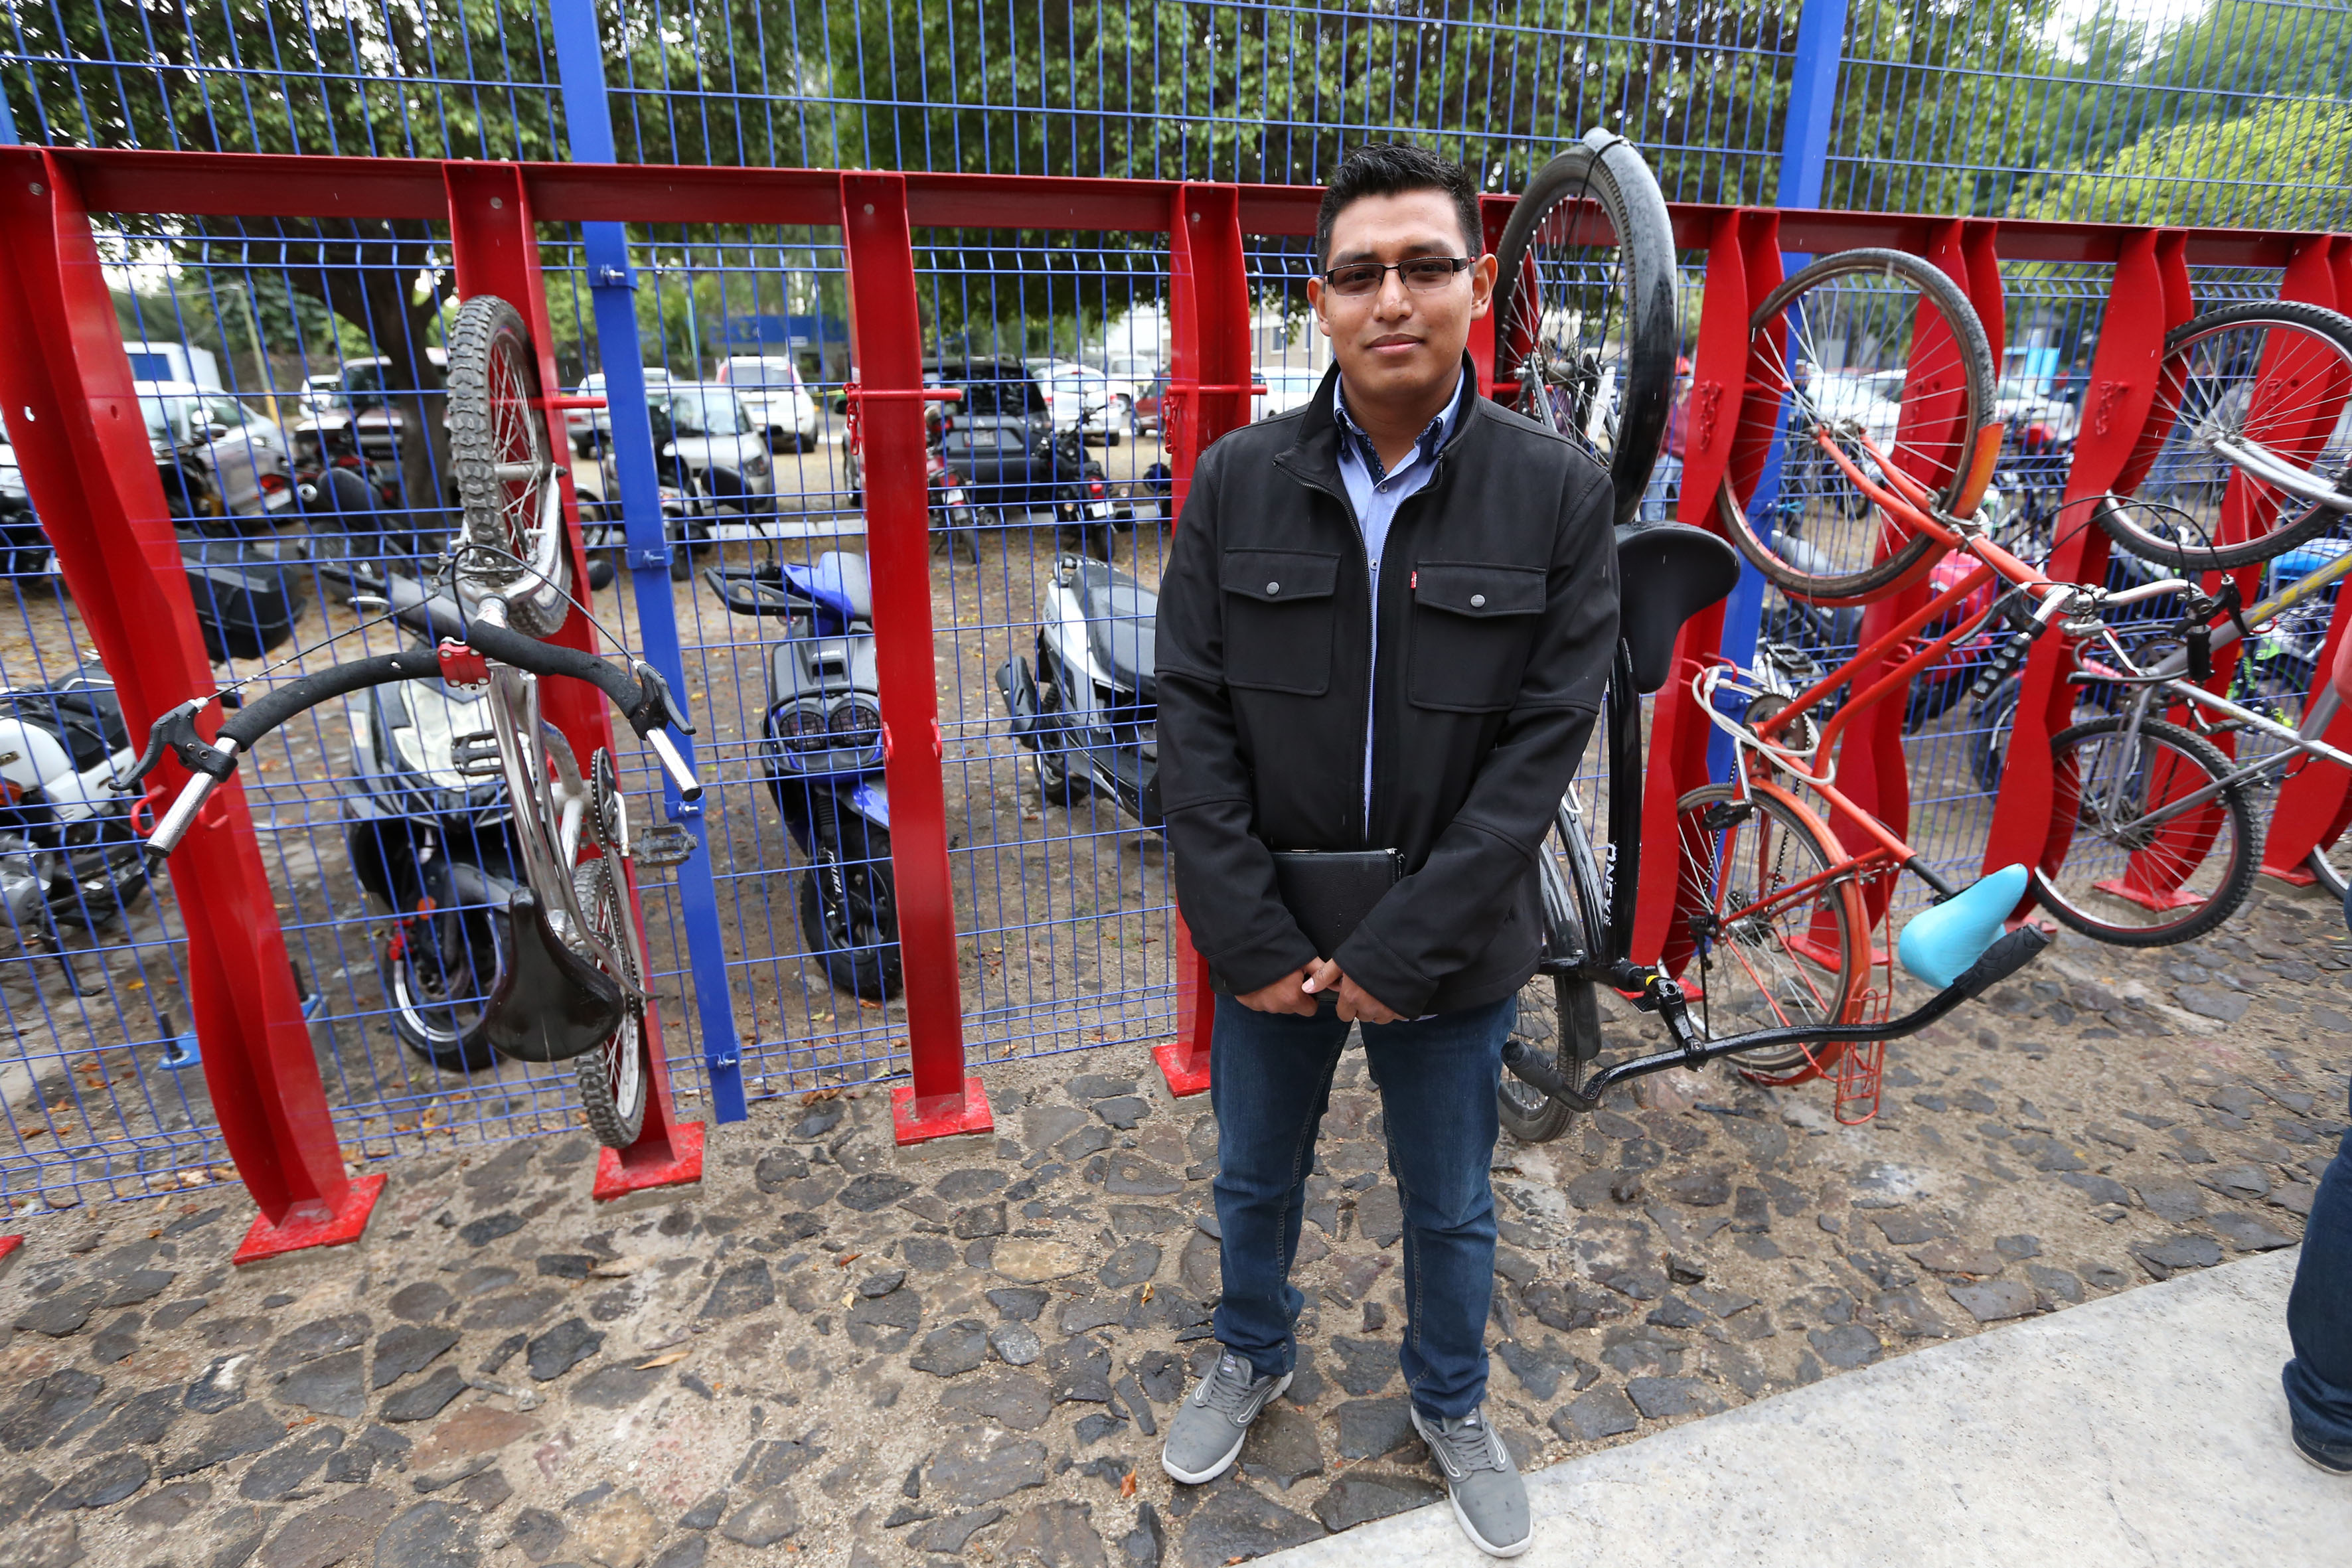 Hombre parado delante de los puertos de bicicletas